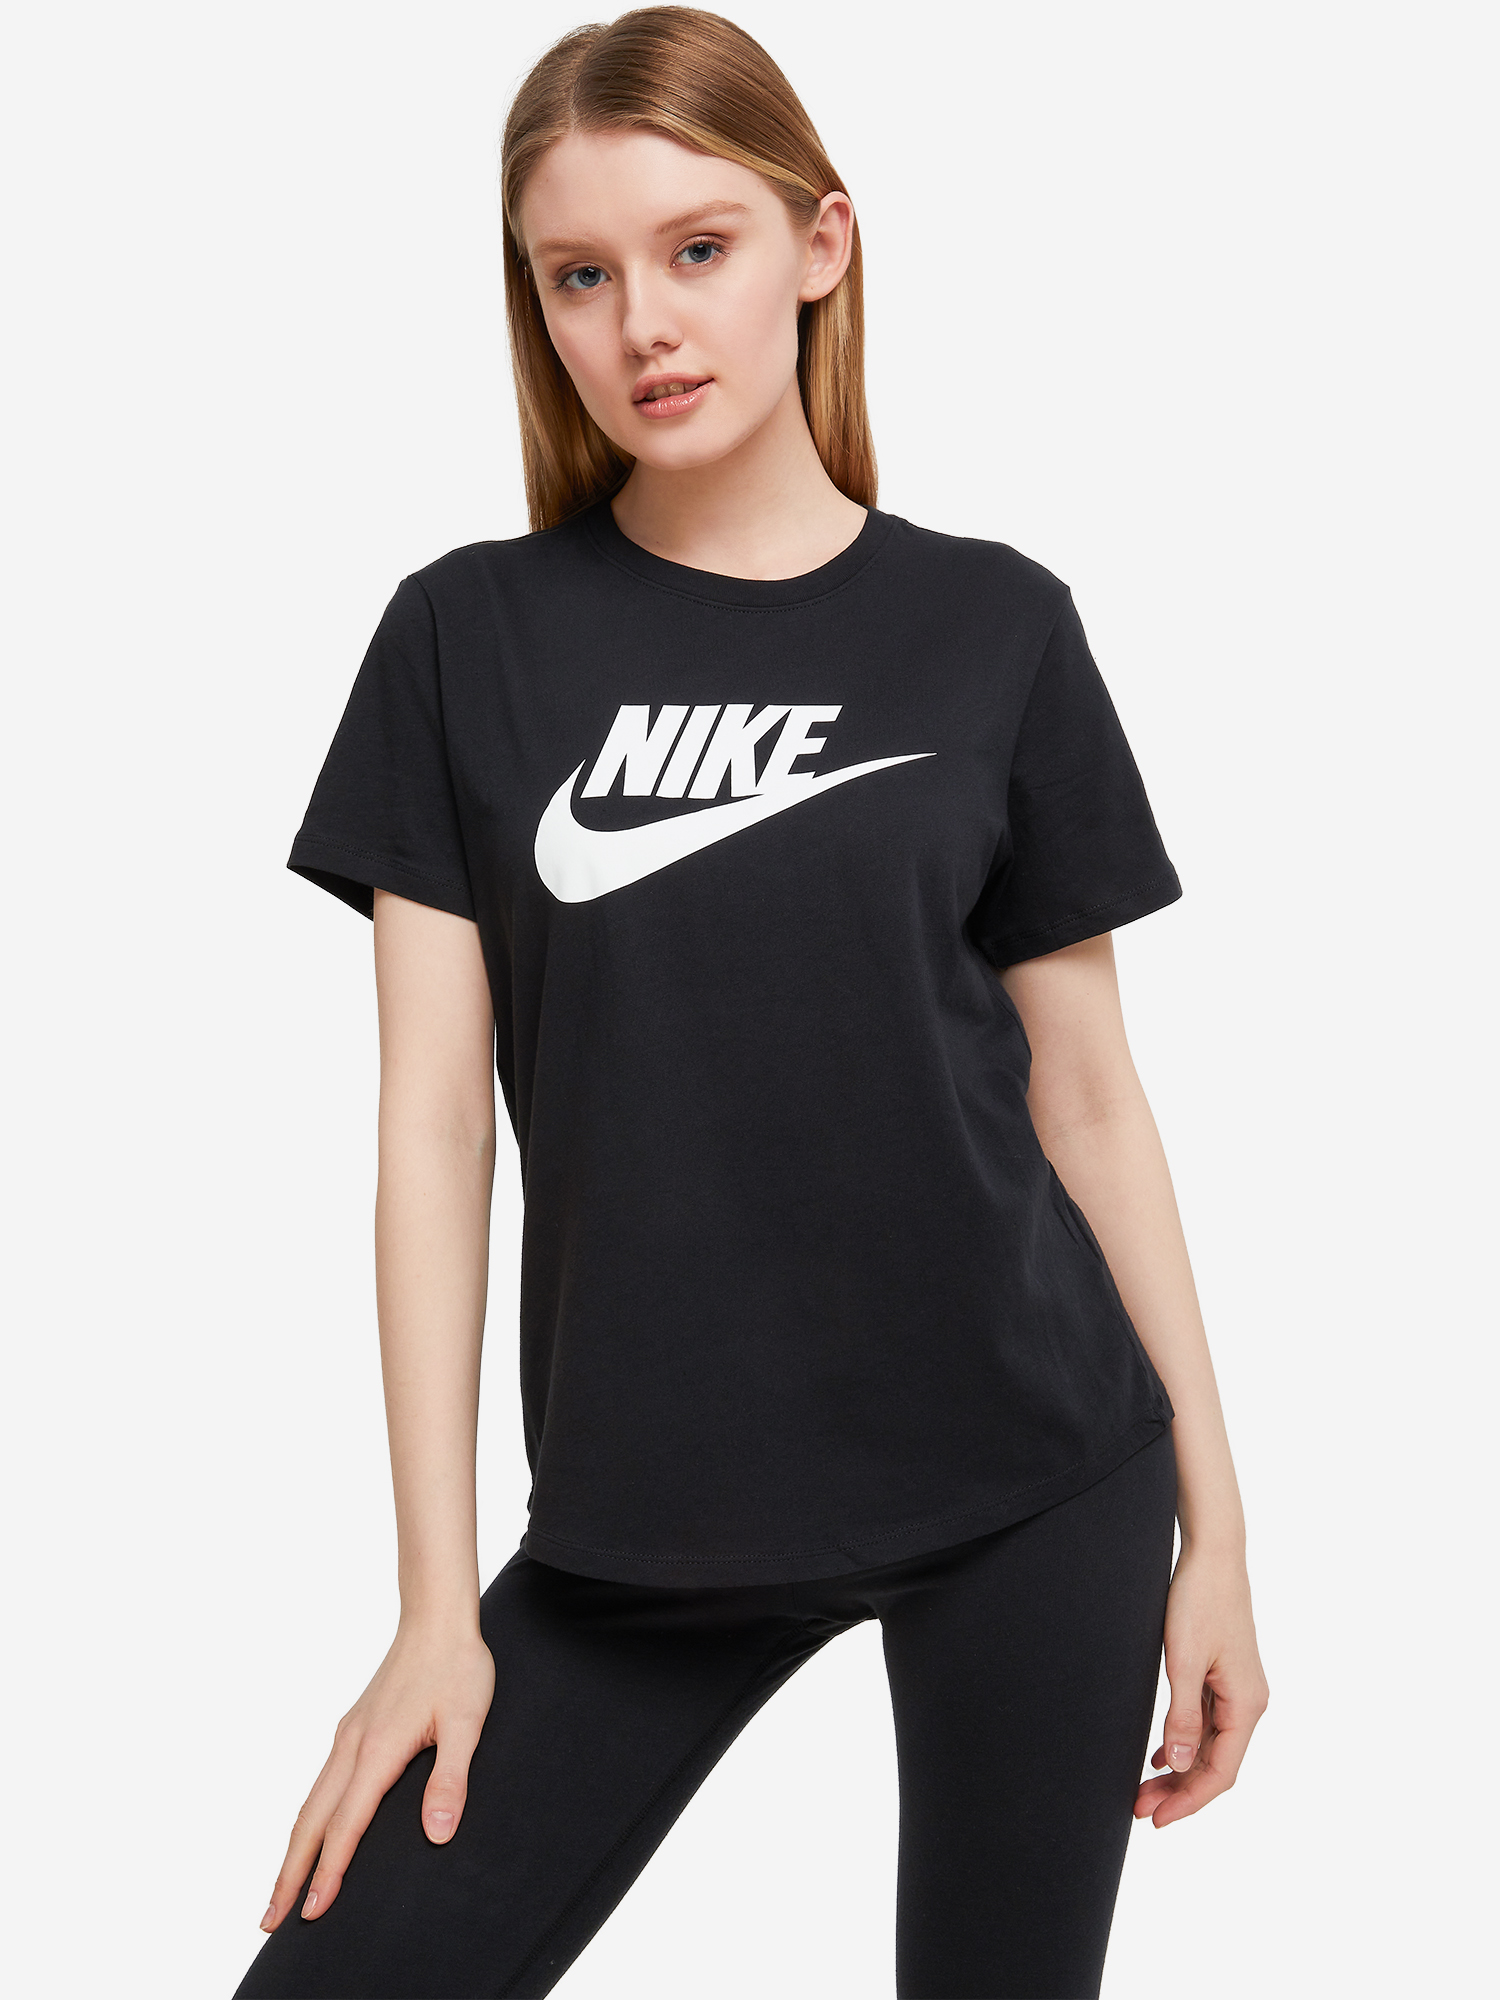 Футболка женская Nike Club Essentials, Черный